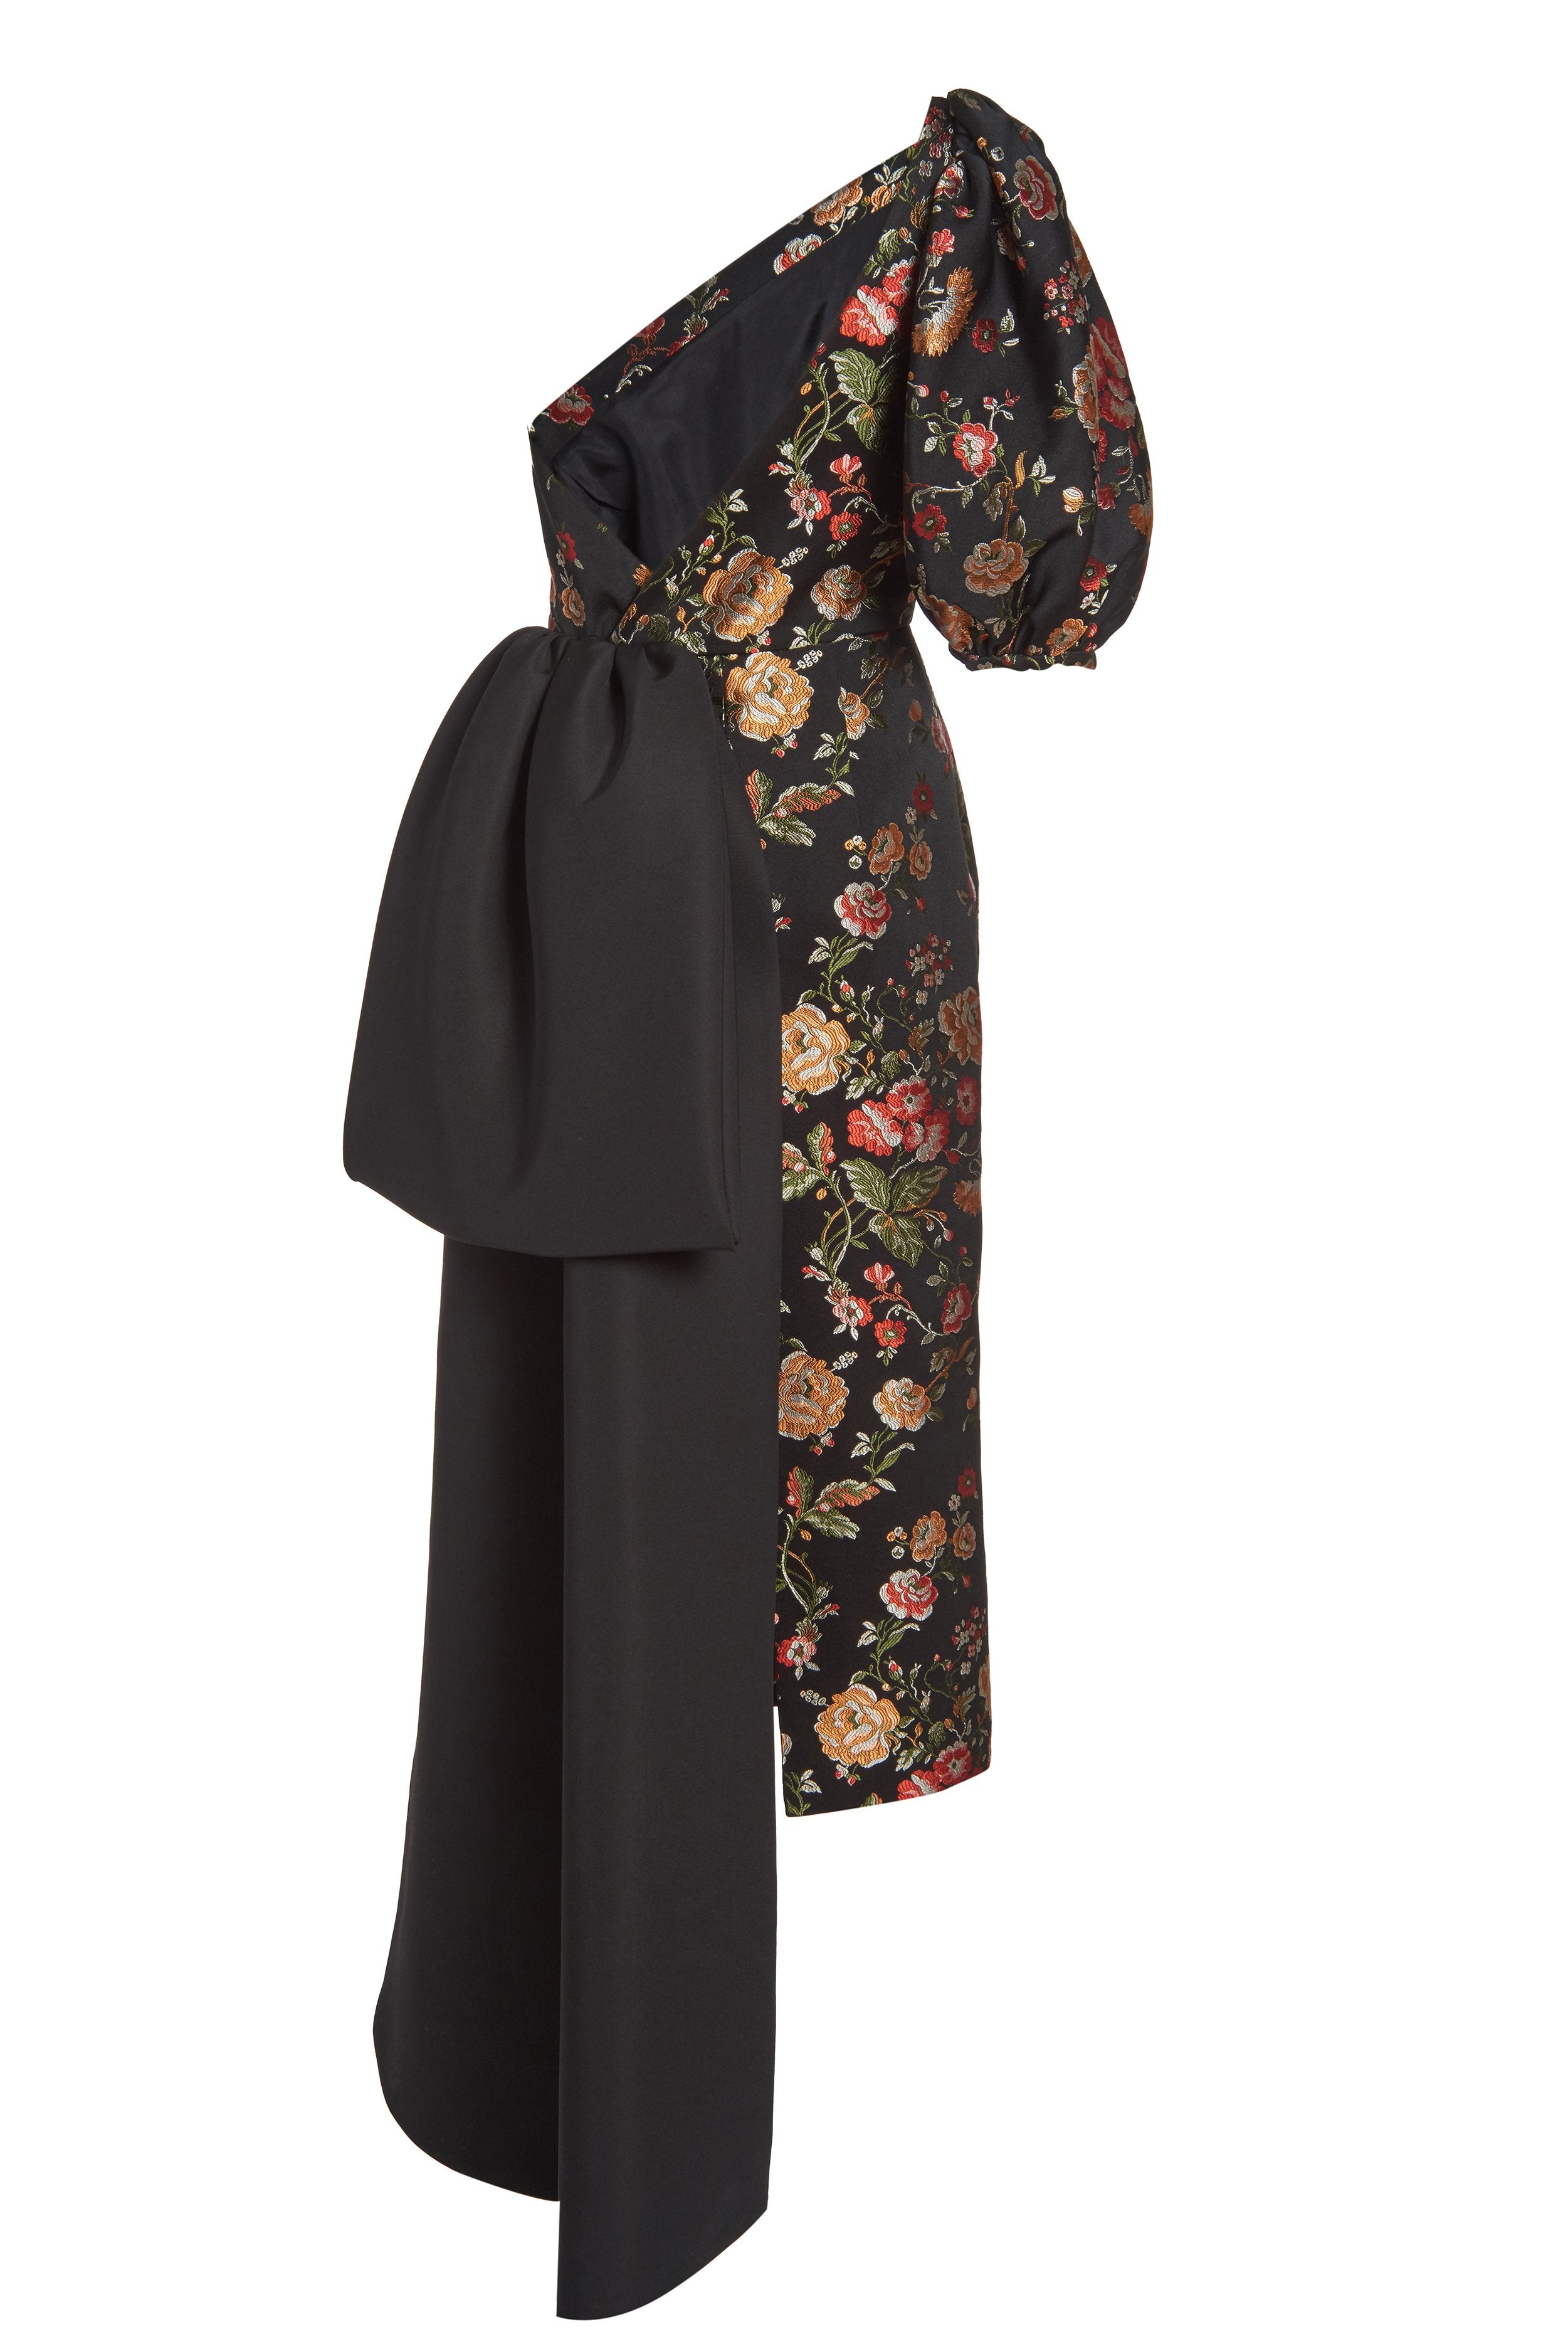 Drusa Black Brocade One Shoulder Dress